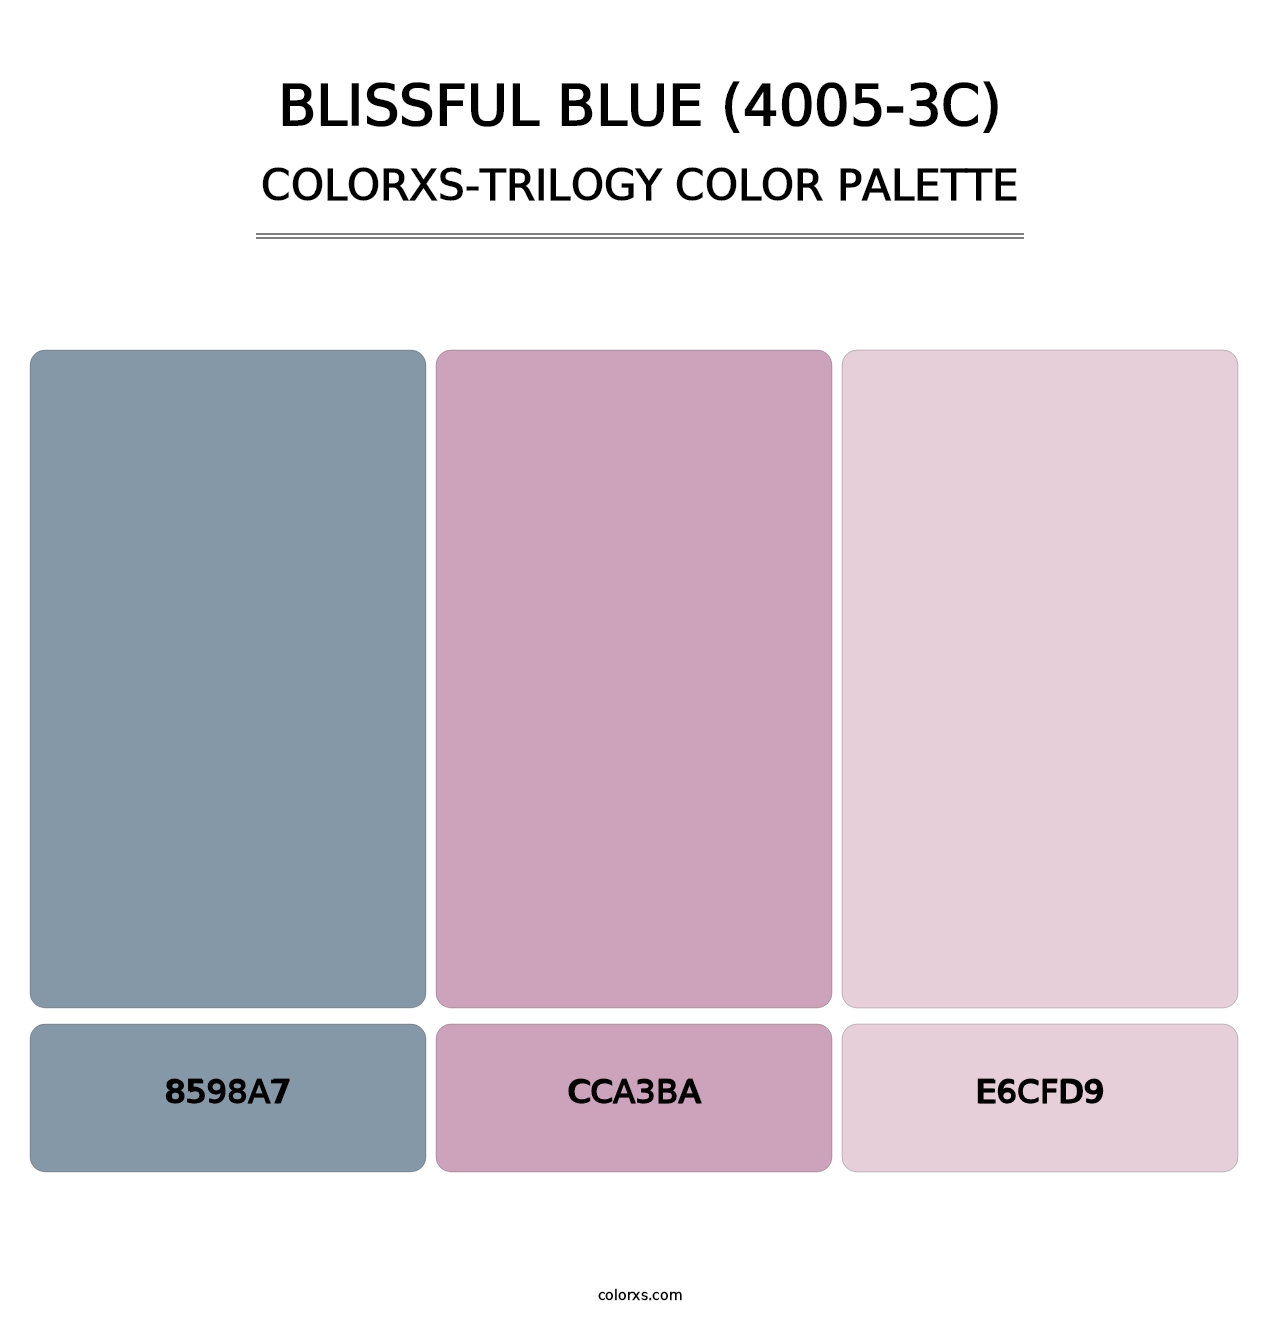 Blissful Blue (4005-3C) - Colorxs Trilogy Palette